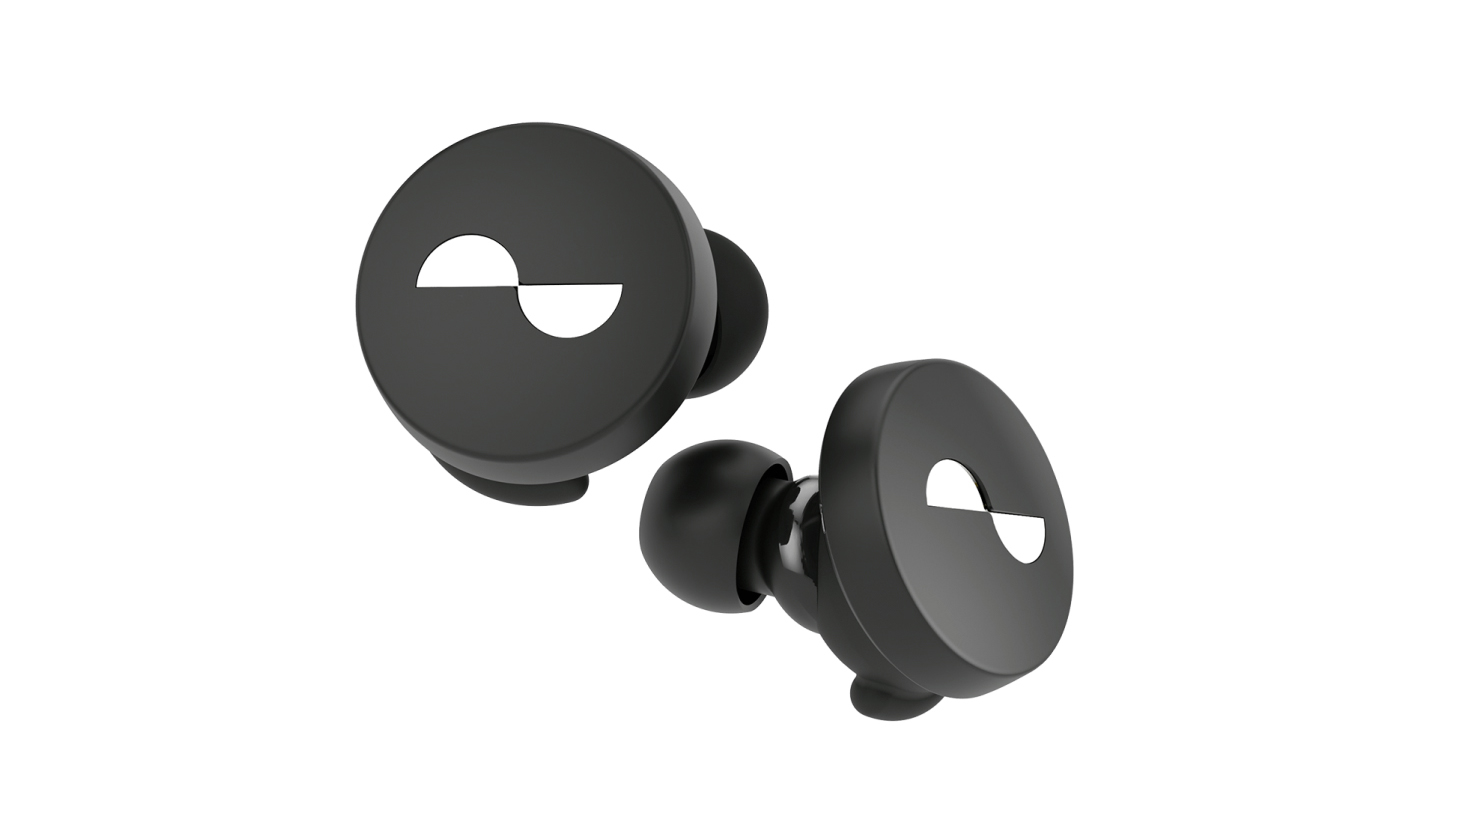 The Nuratrue true wireless earbuds in black wth a white logo